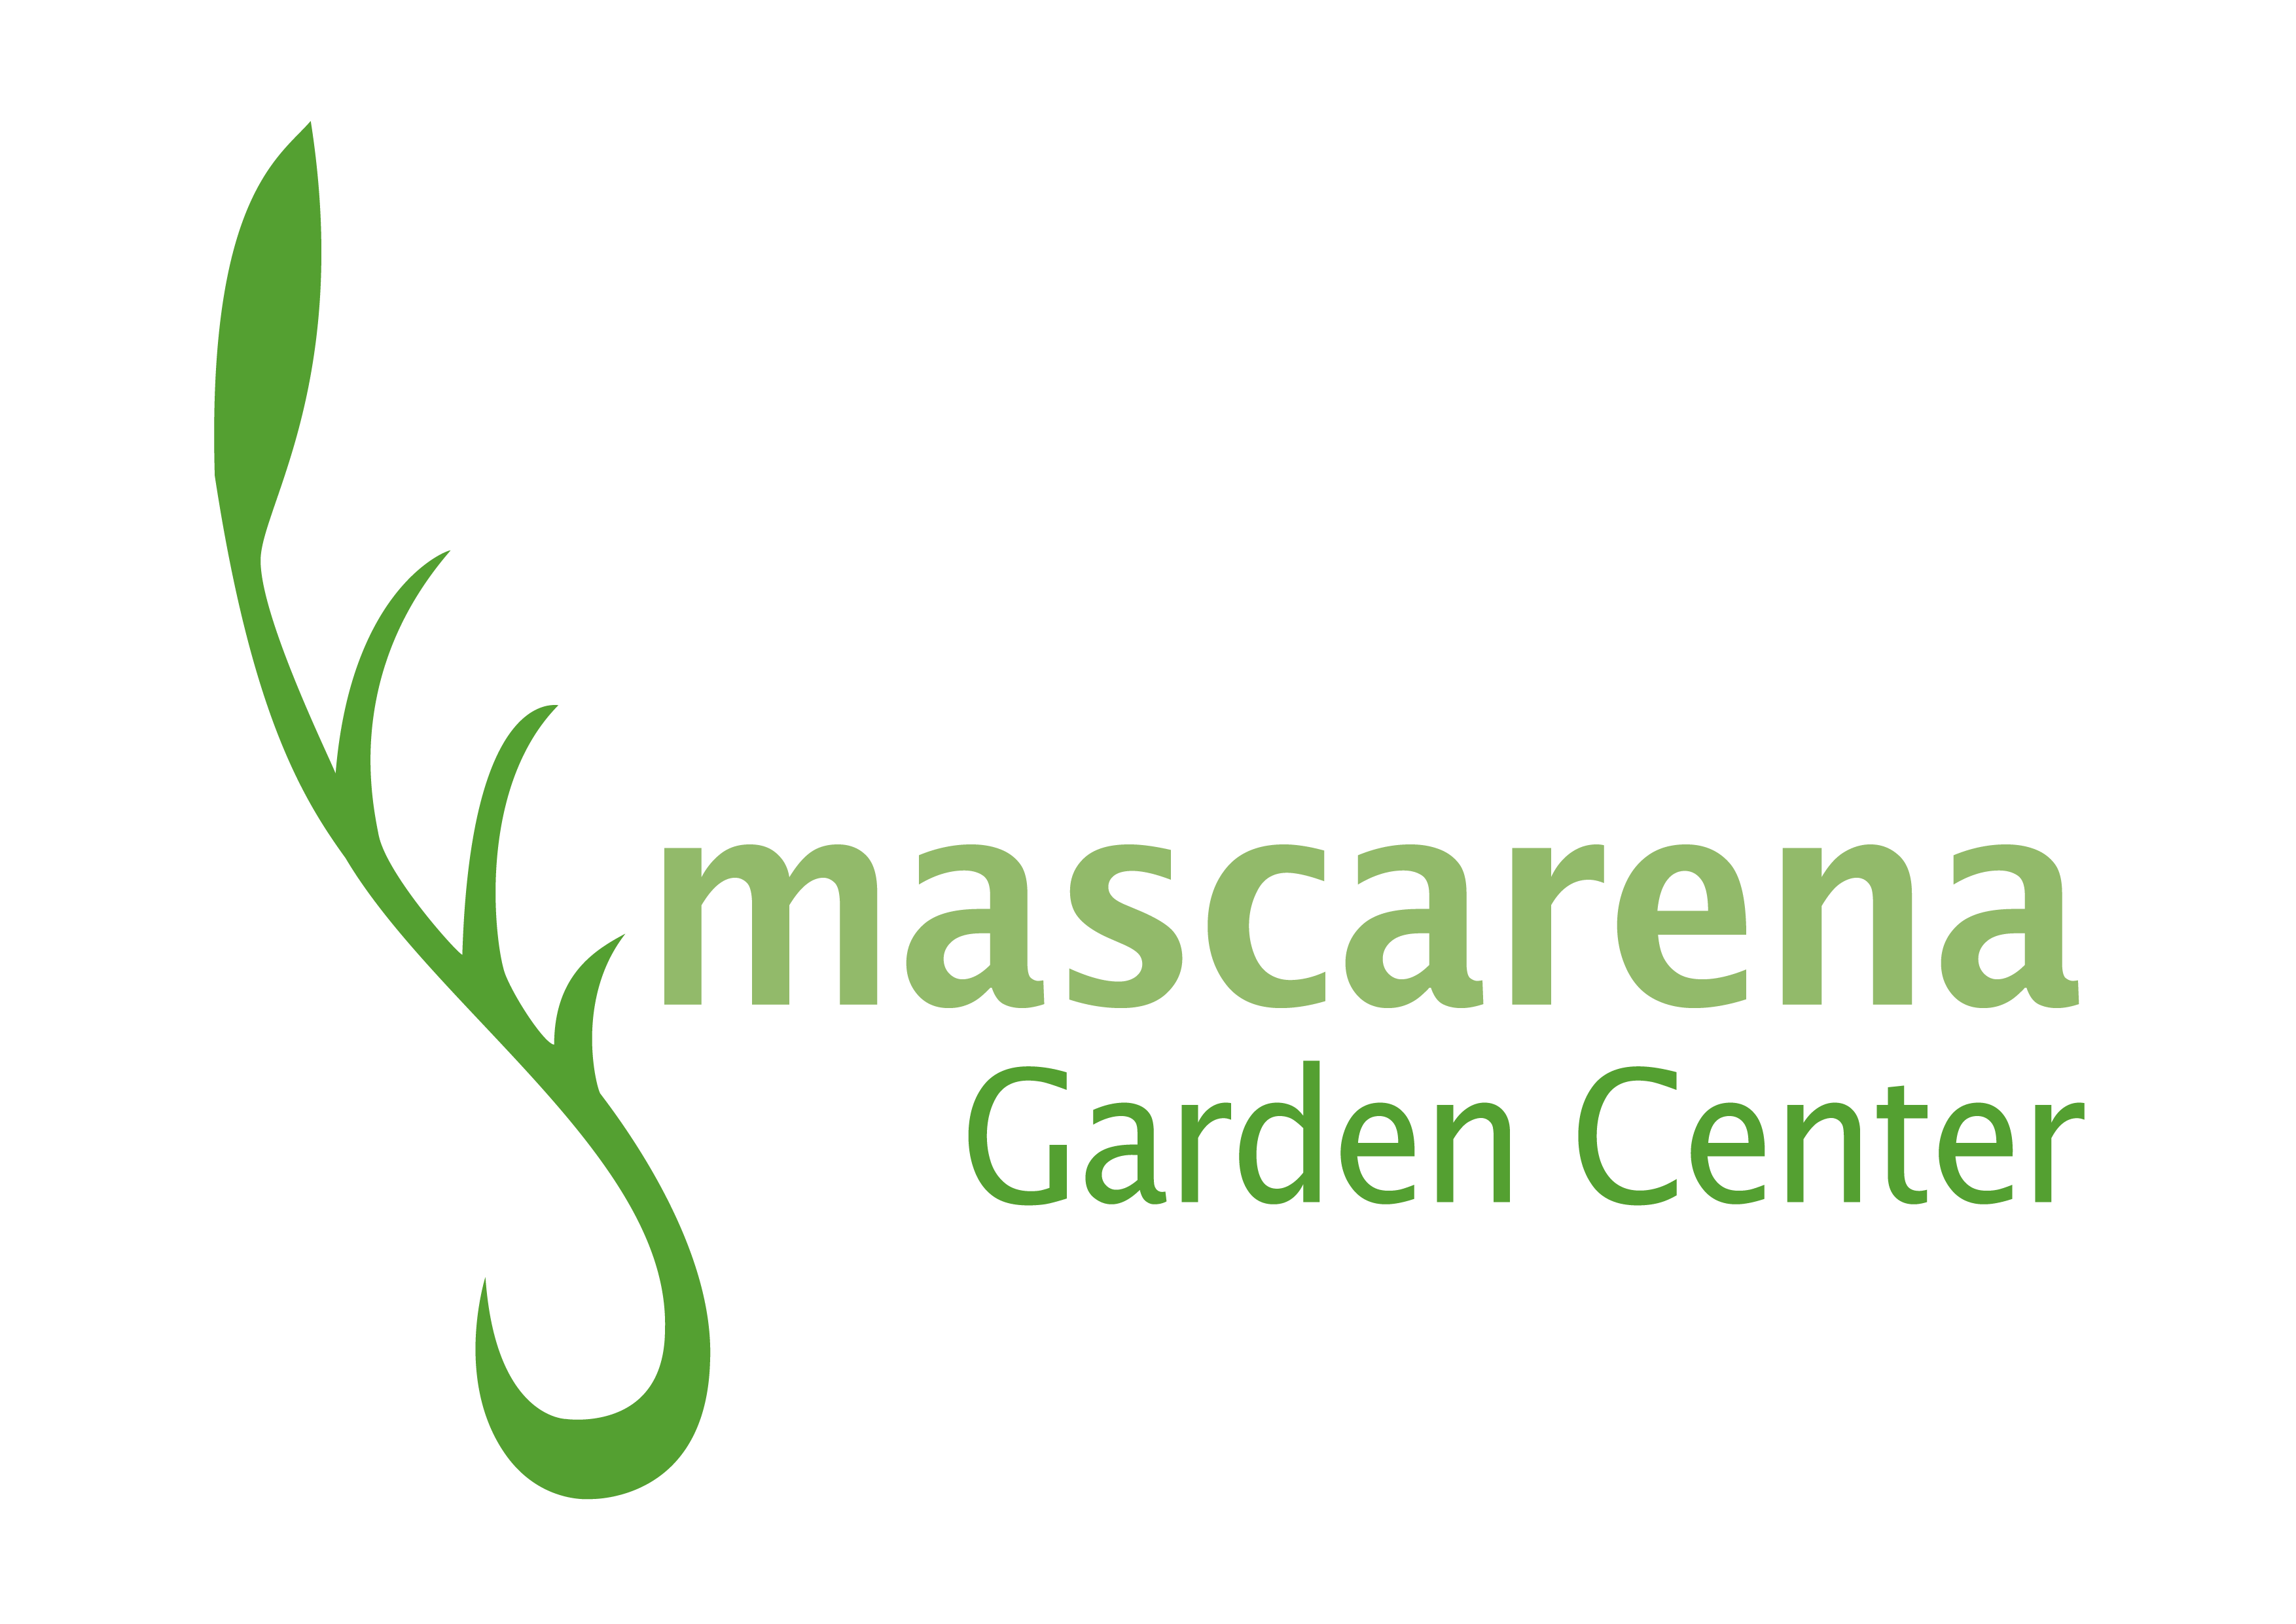 Mascarena Garden